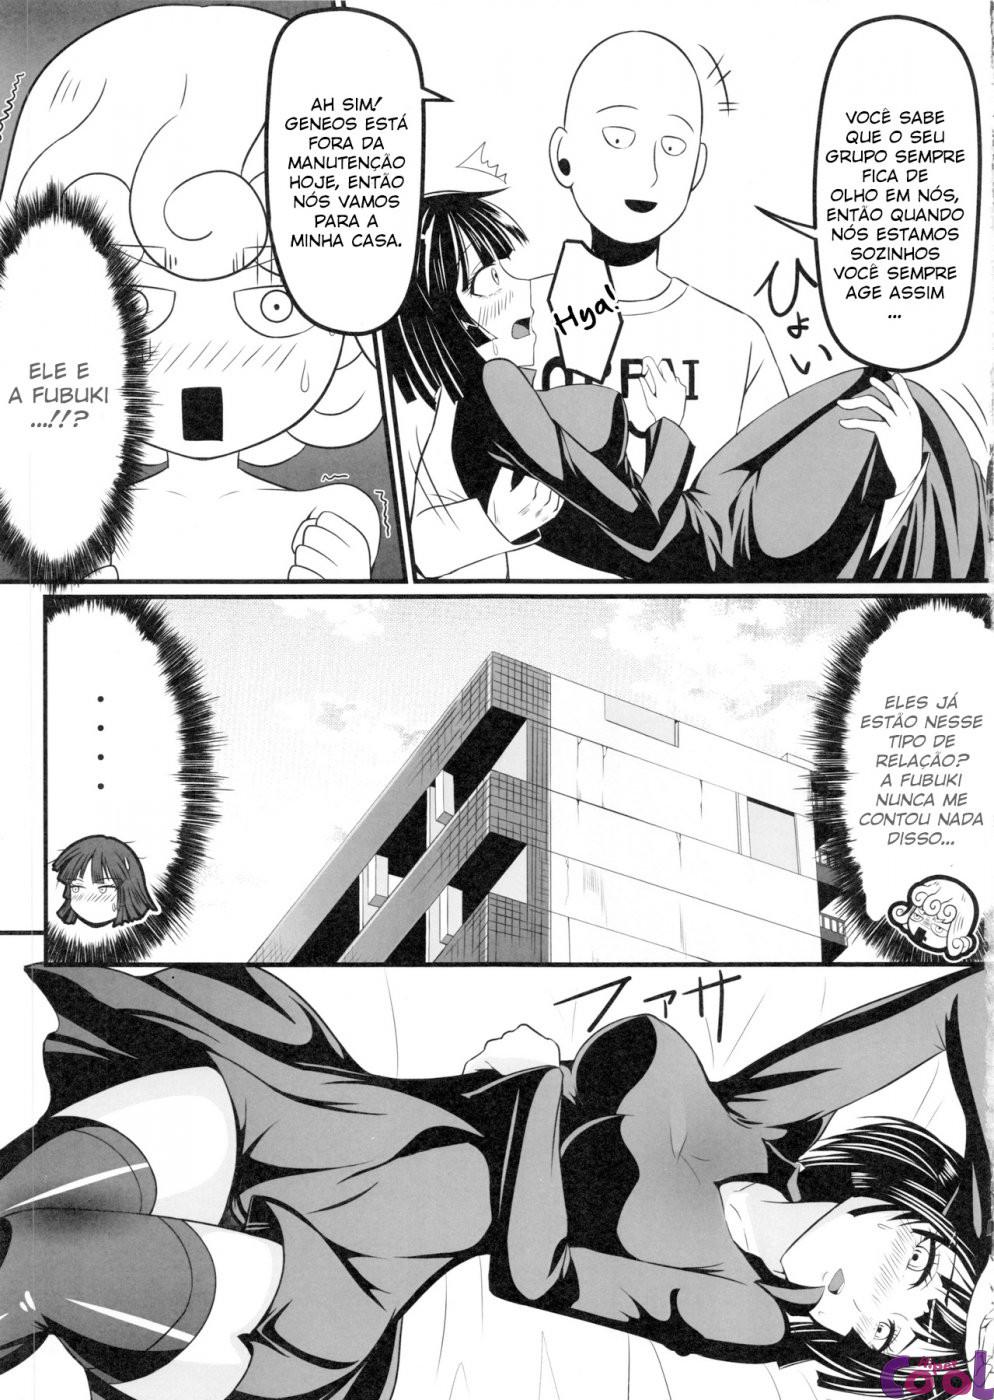 dekoboko-love-sister-chapter-01-page-06.jpg